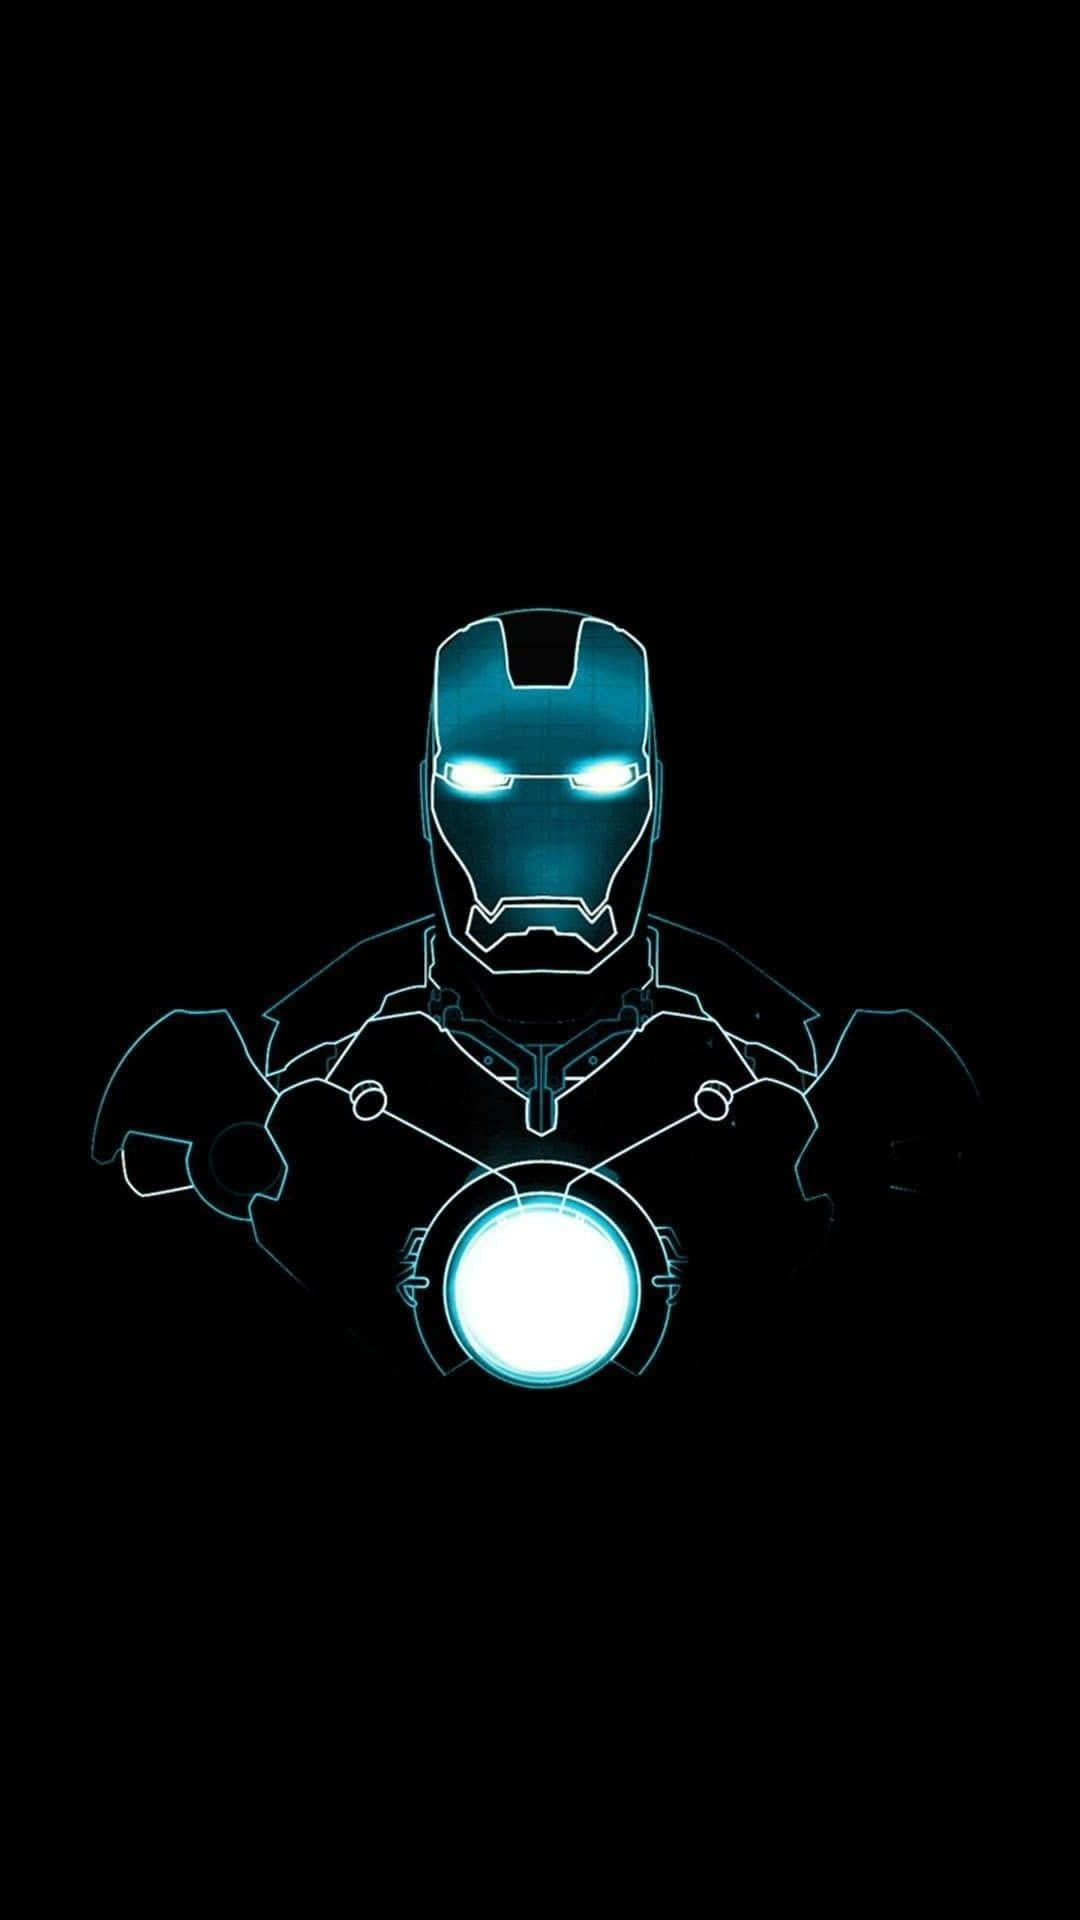 Fondode Pantalla Genial De Iron Man Arc Reactor Para Iphone. Fondo de pantalla